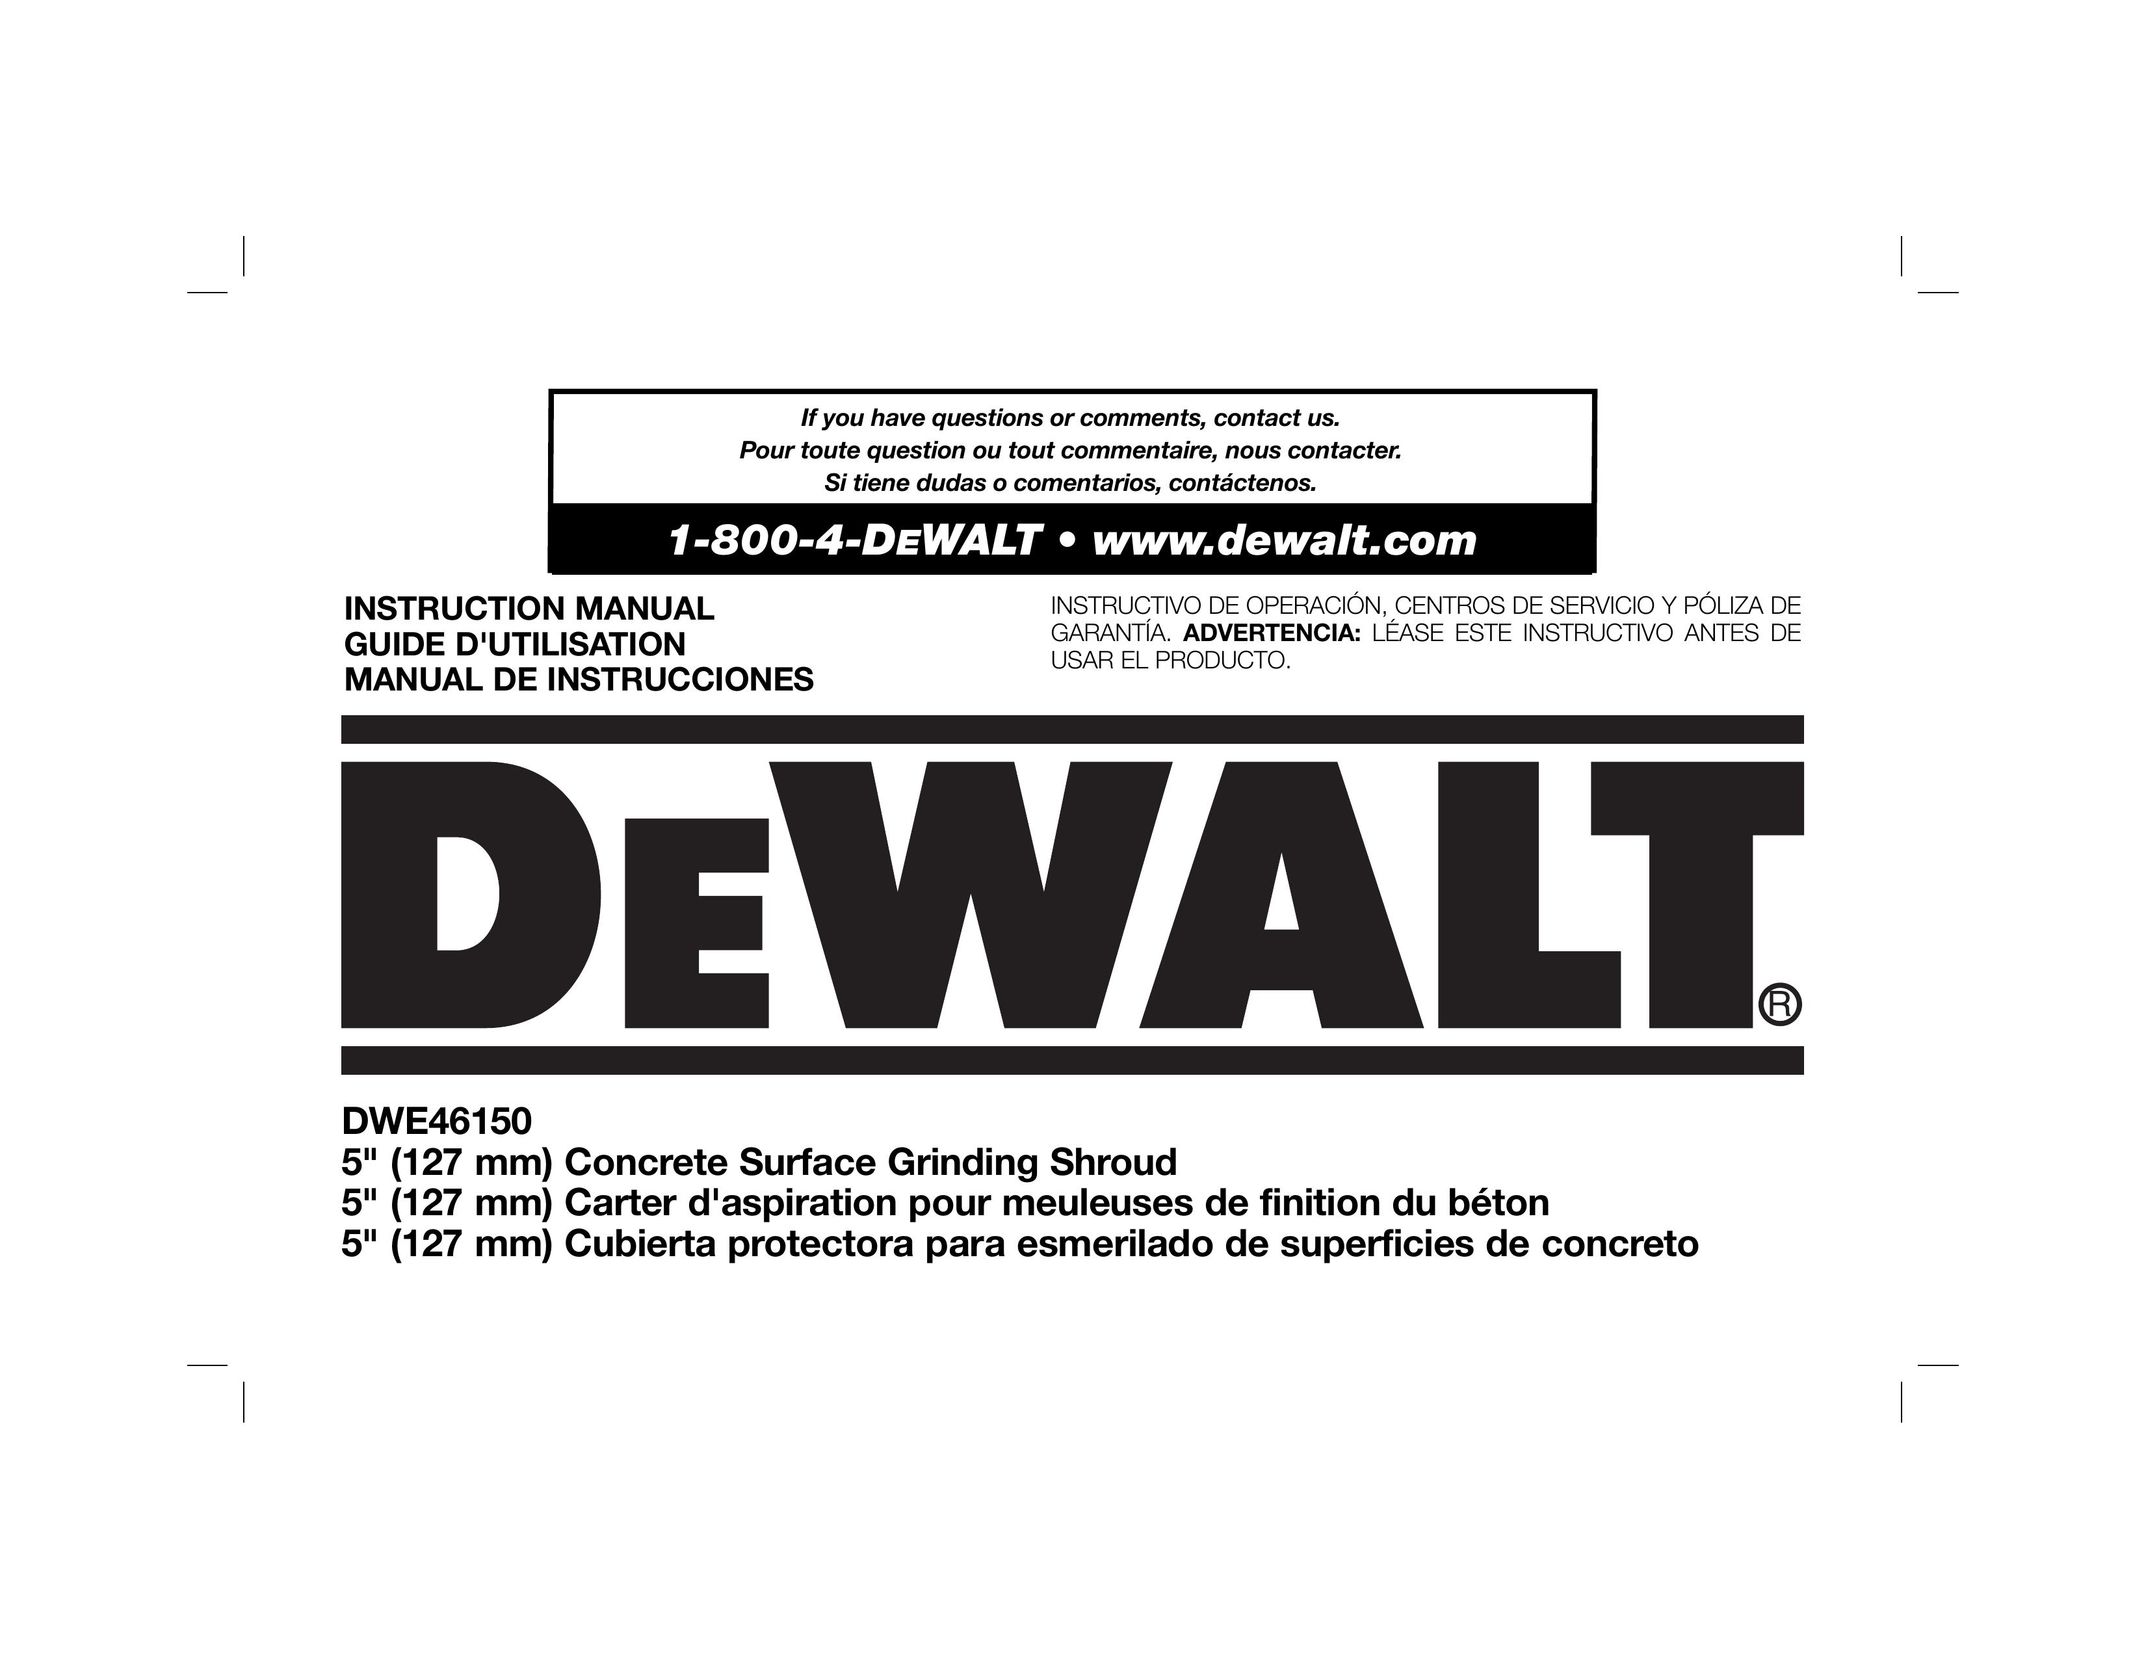 DeWalt DWE46150 Grinder User Manual